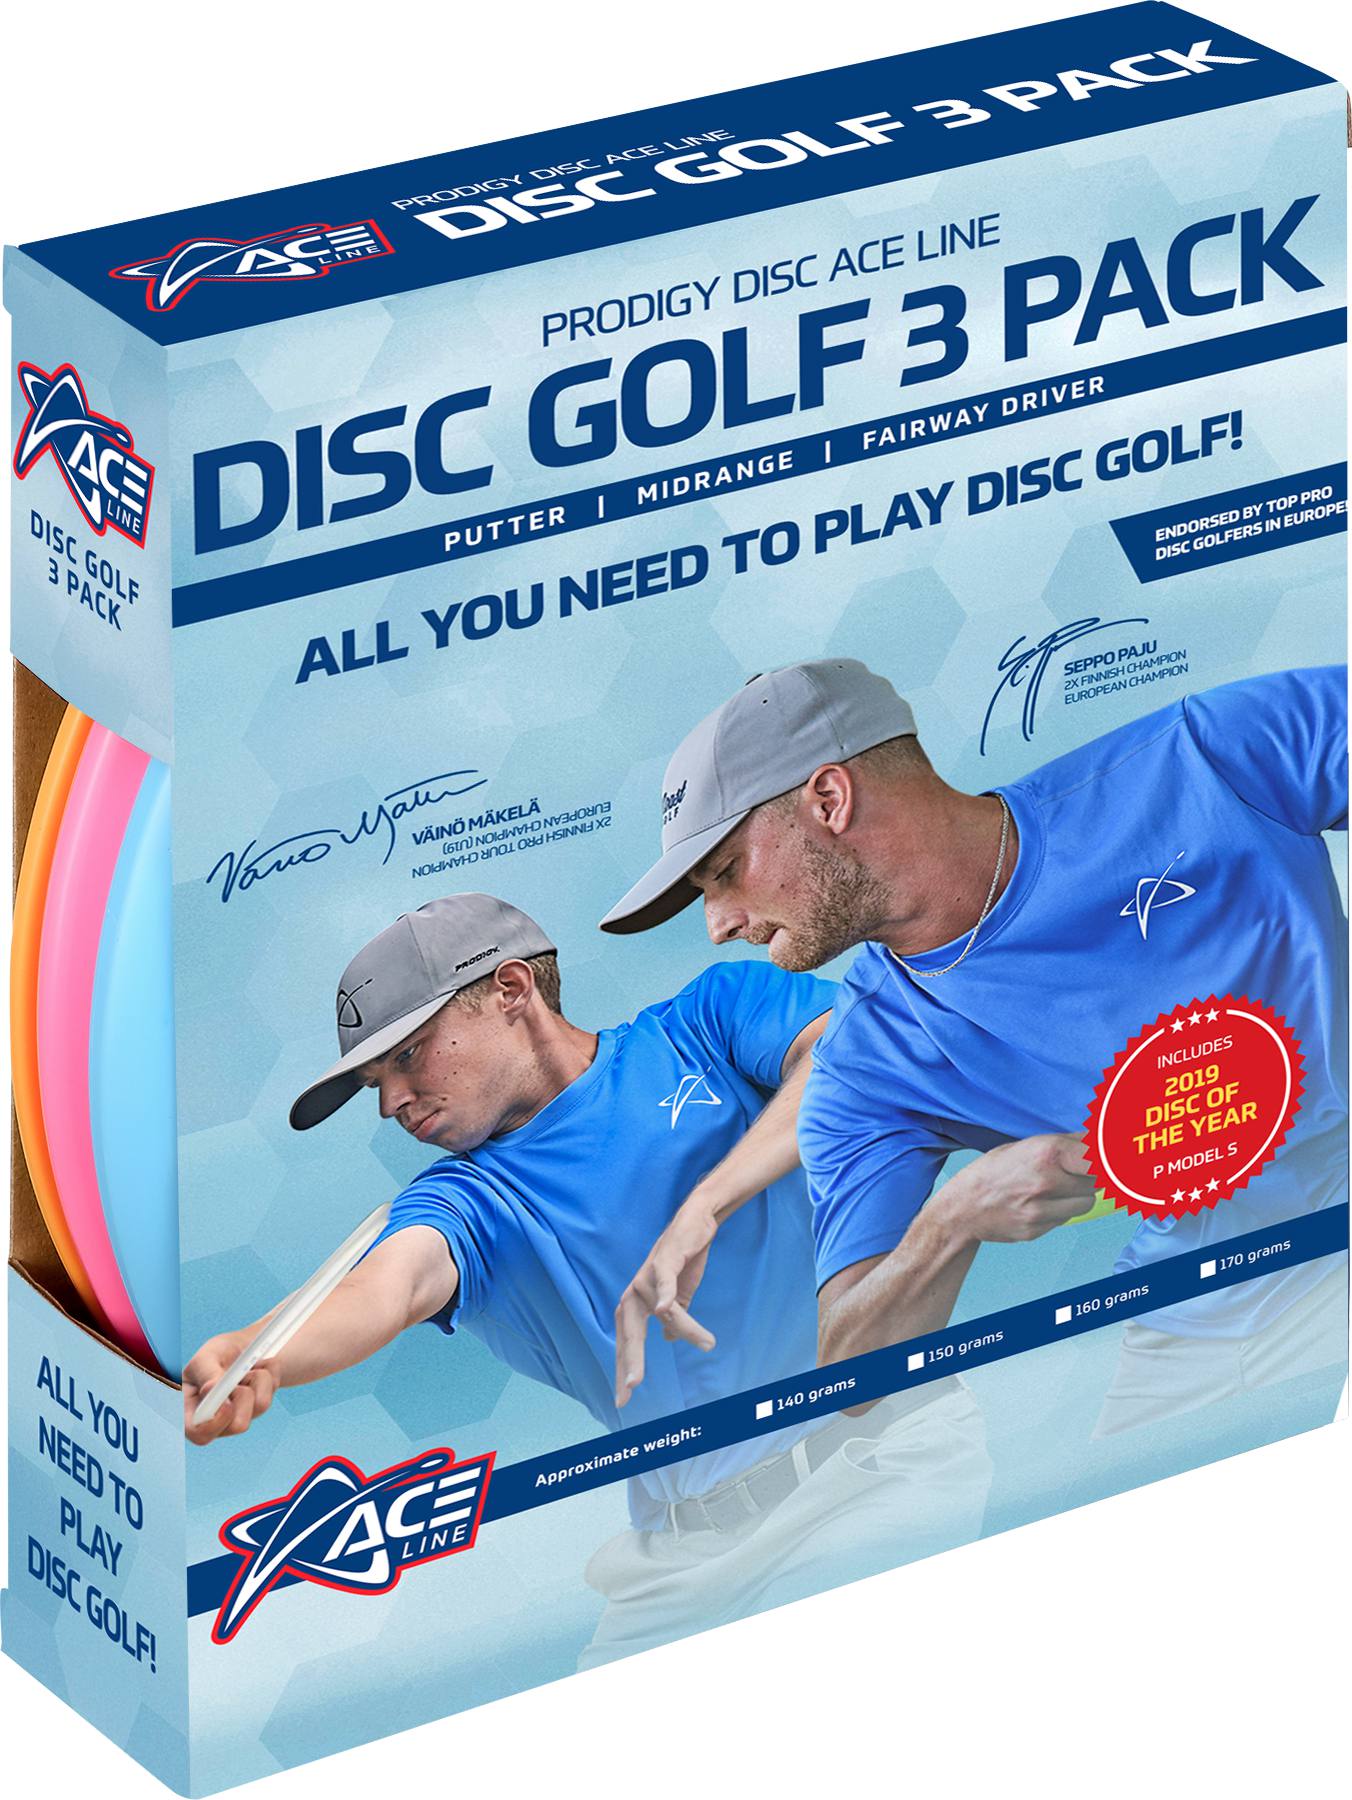 Prodigy Disc Ace Golf